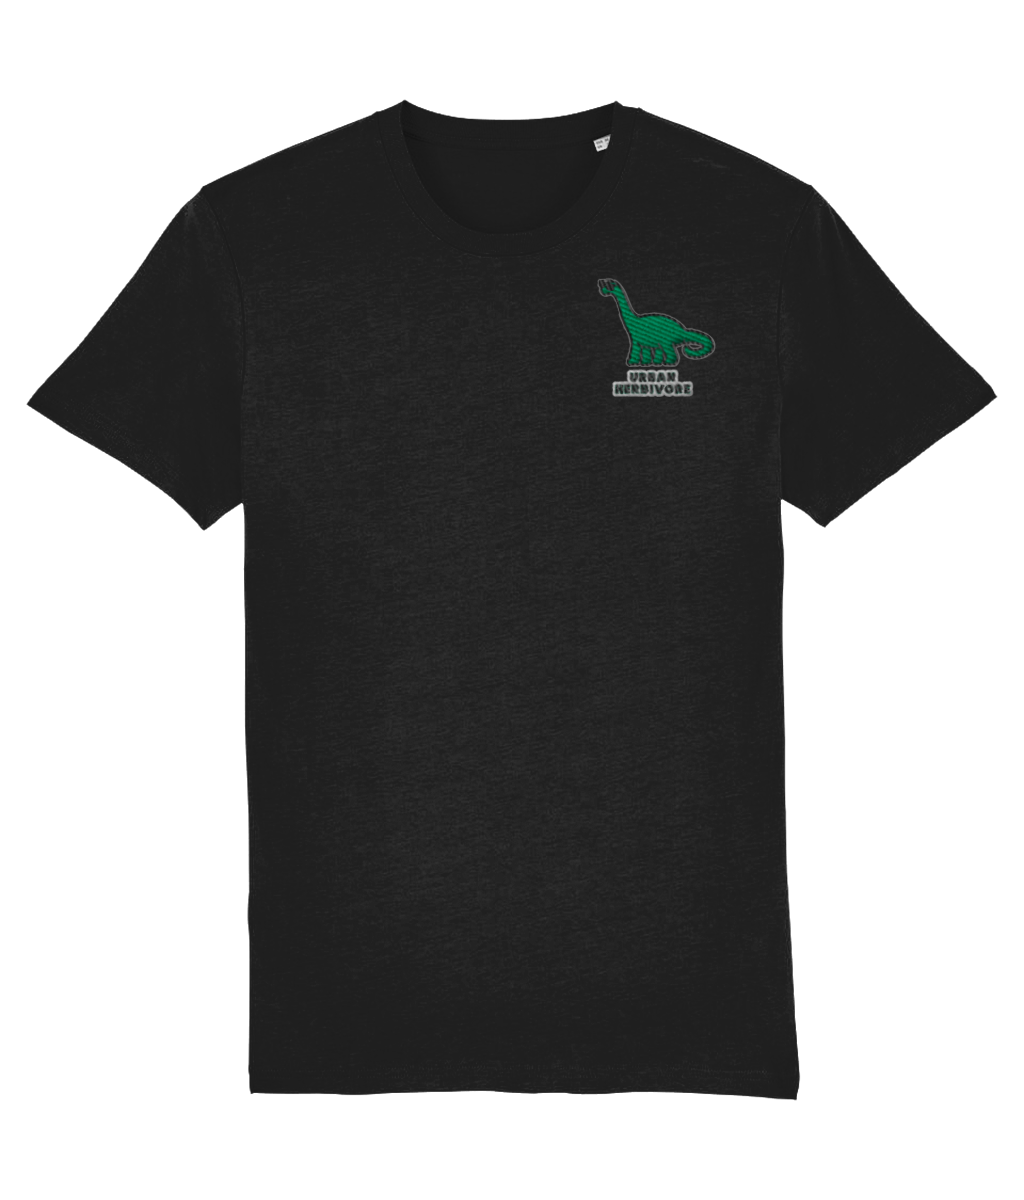 Urban herbivore vegan t-shirt in black